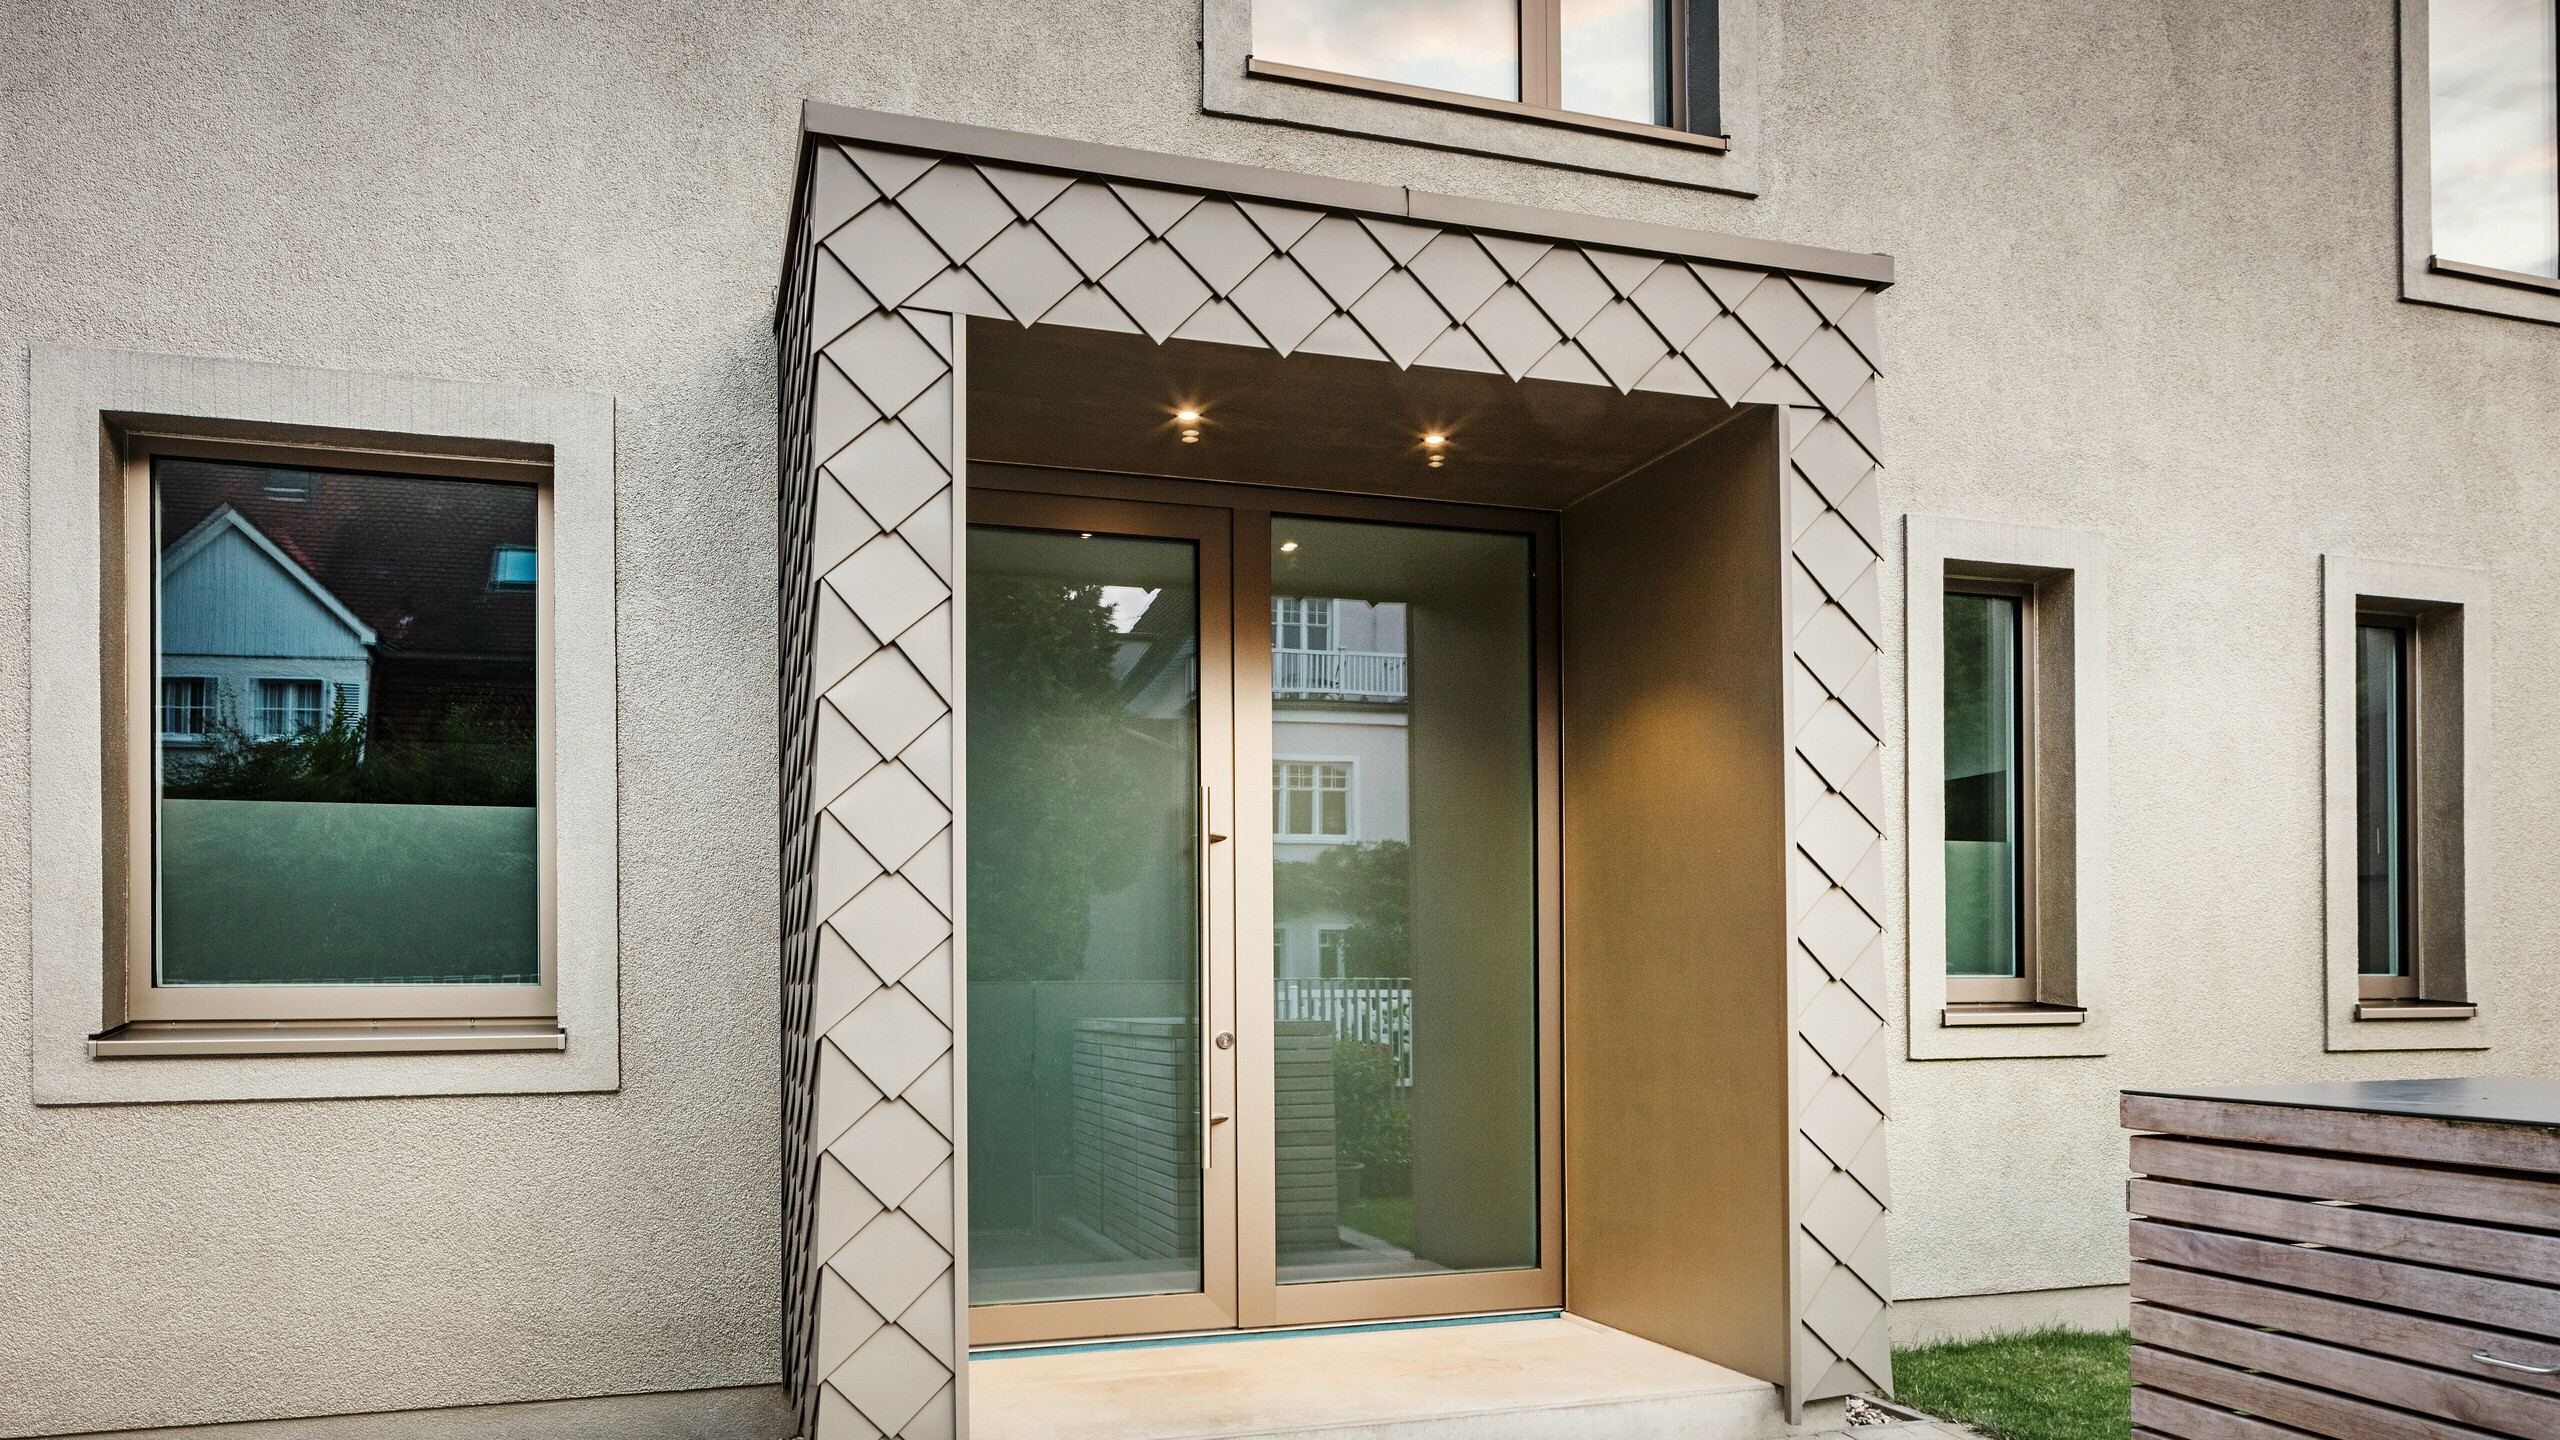 Detailný záber na vstupný priestor moderného rodinného domu s hliníkovým obkladom bronzovej farby od spoločnosti PREFA. Vchod je zakrytý a obložený elegantnými hliníkovými šablónami, ktoré dodávajú priestoru moderný a štýlový vzhľad. Naľavo a napravo od vstupných dverí sú veľké okná, ktoré vytvárajú svetlú a príjemnú atmosféru.